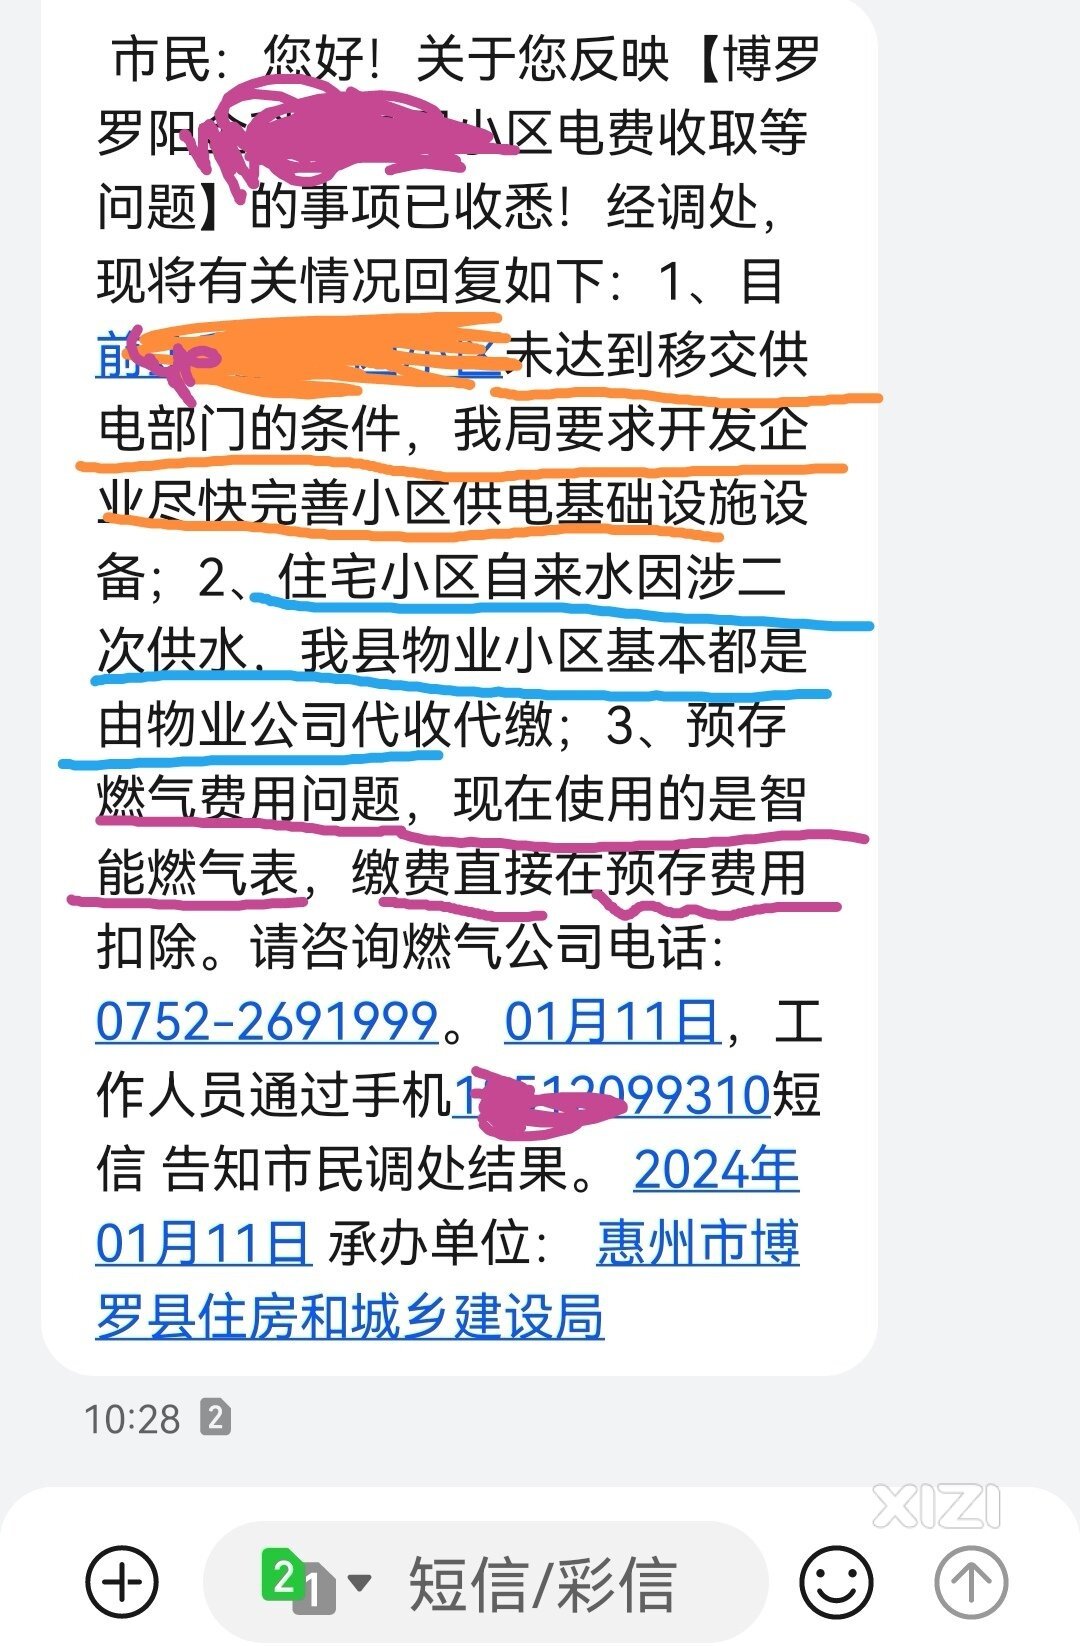 关于惠州博罗水电燃气问题